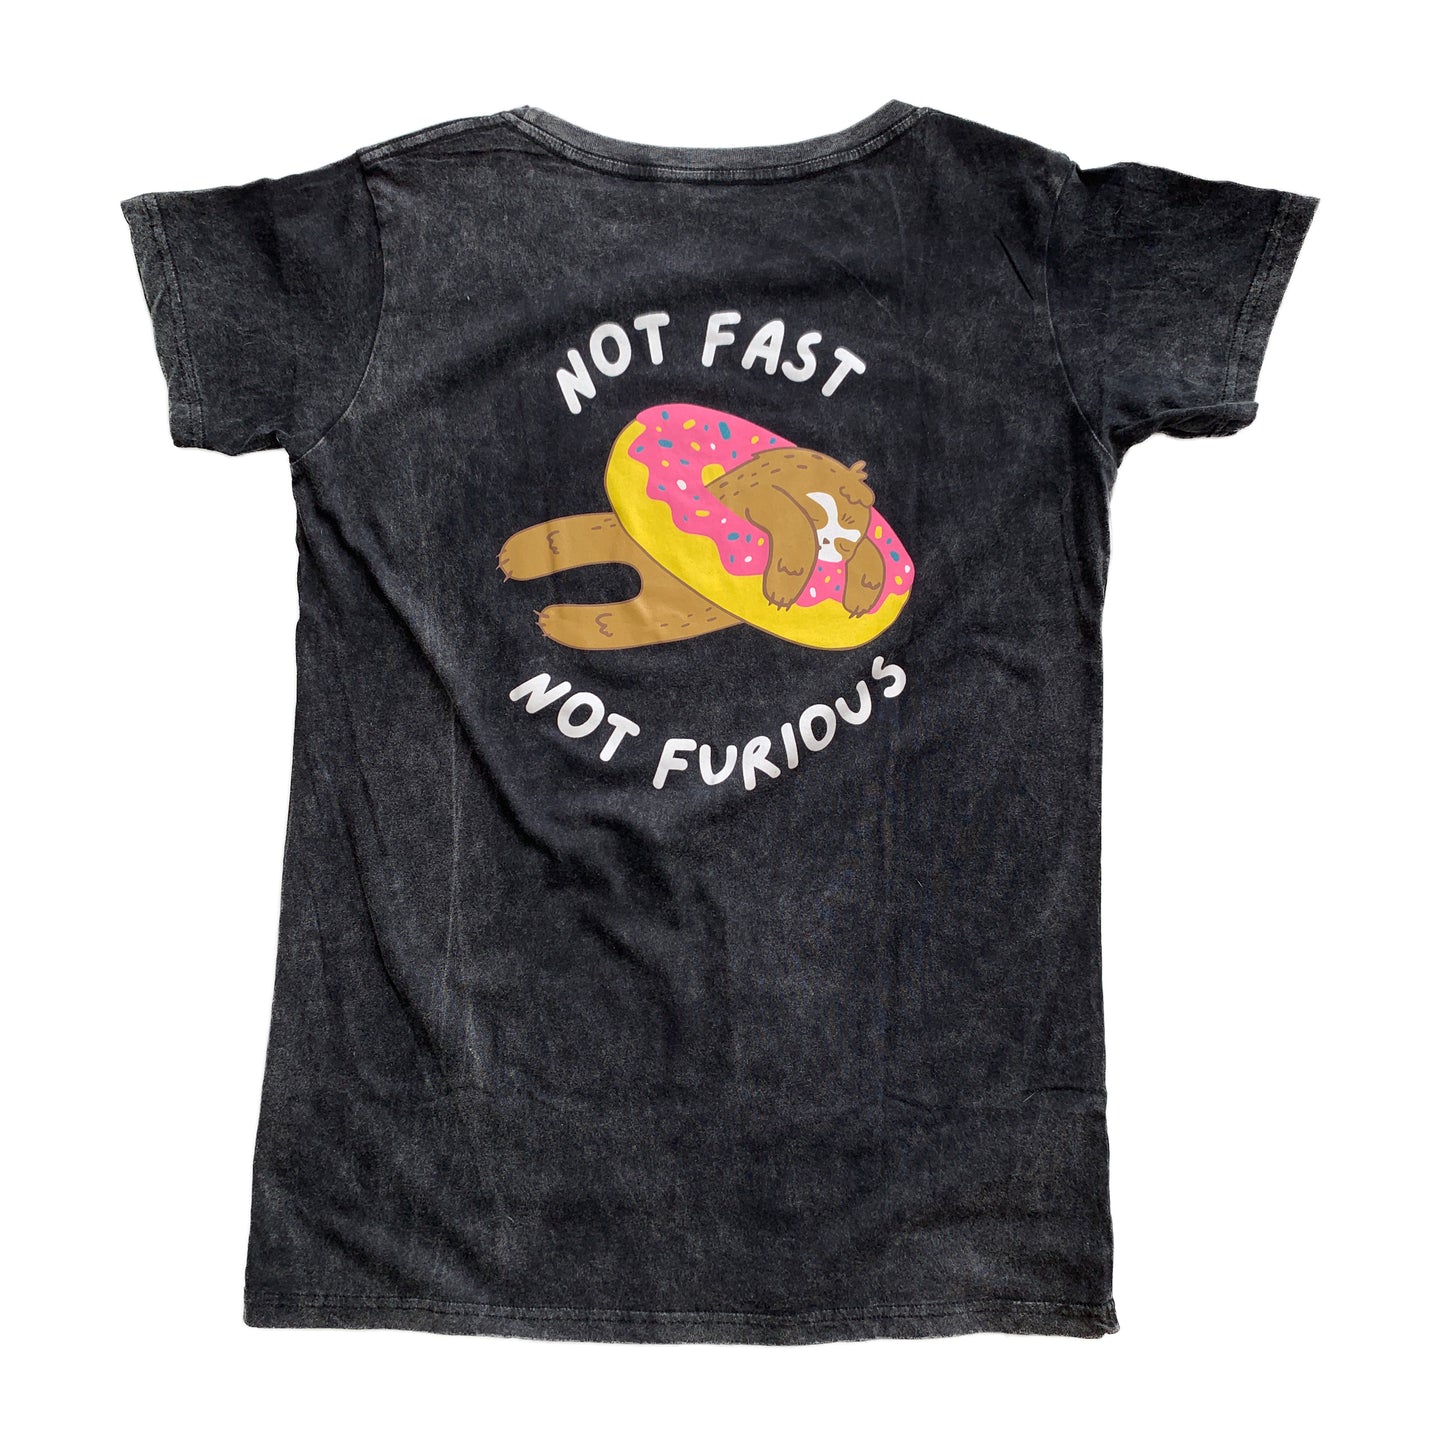 Not fast not furious (Donut) T-shirt